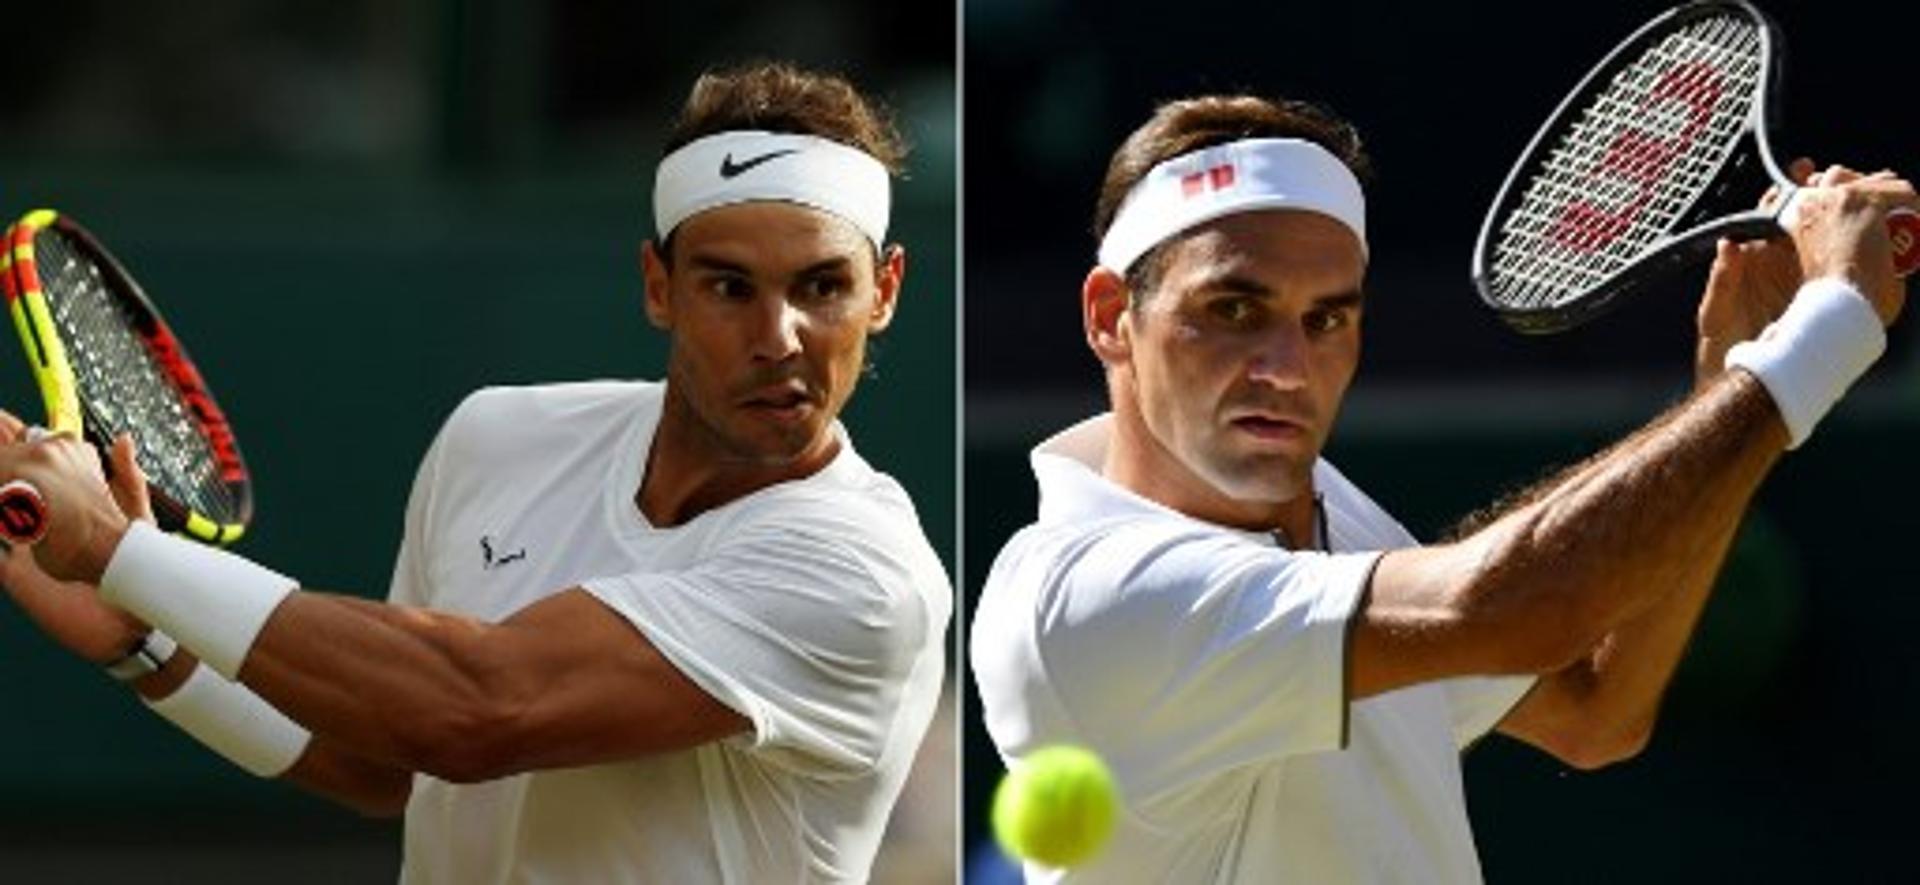 Montagem - Nadal e Federer